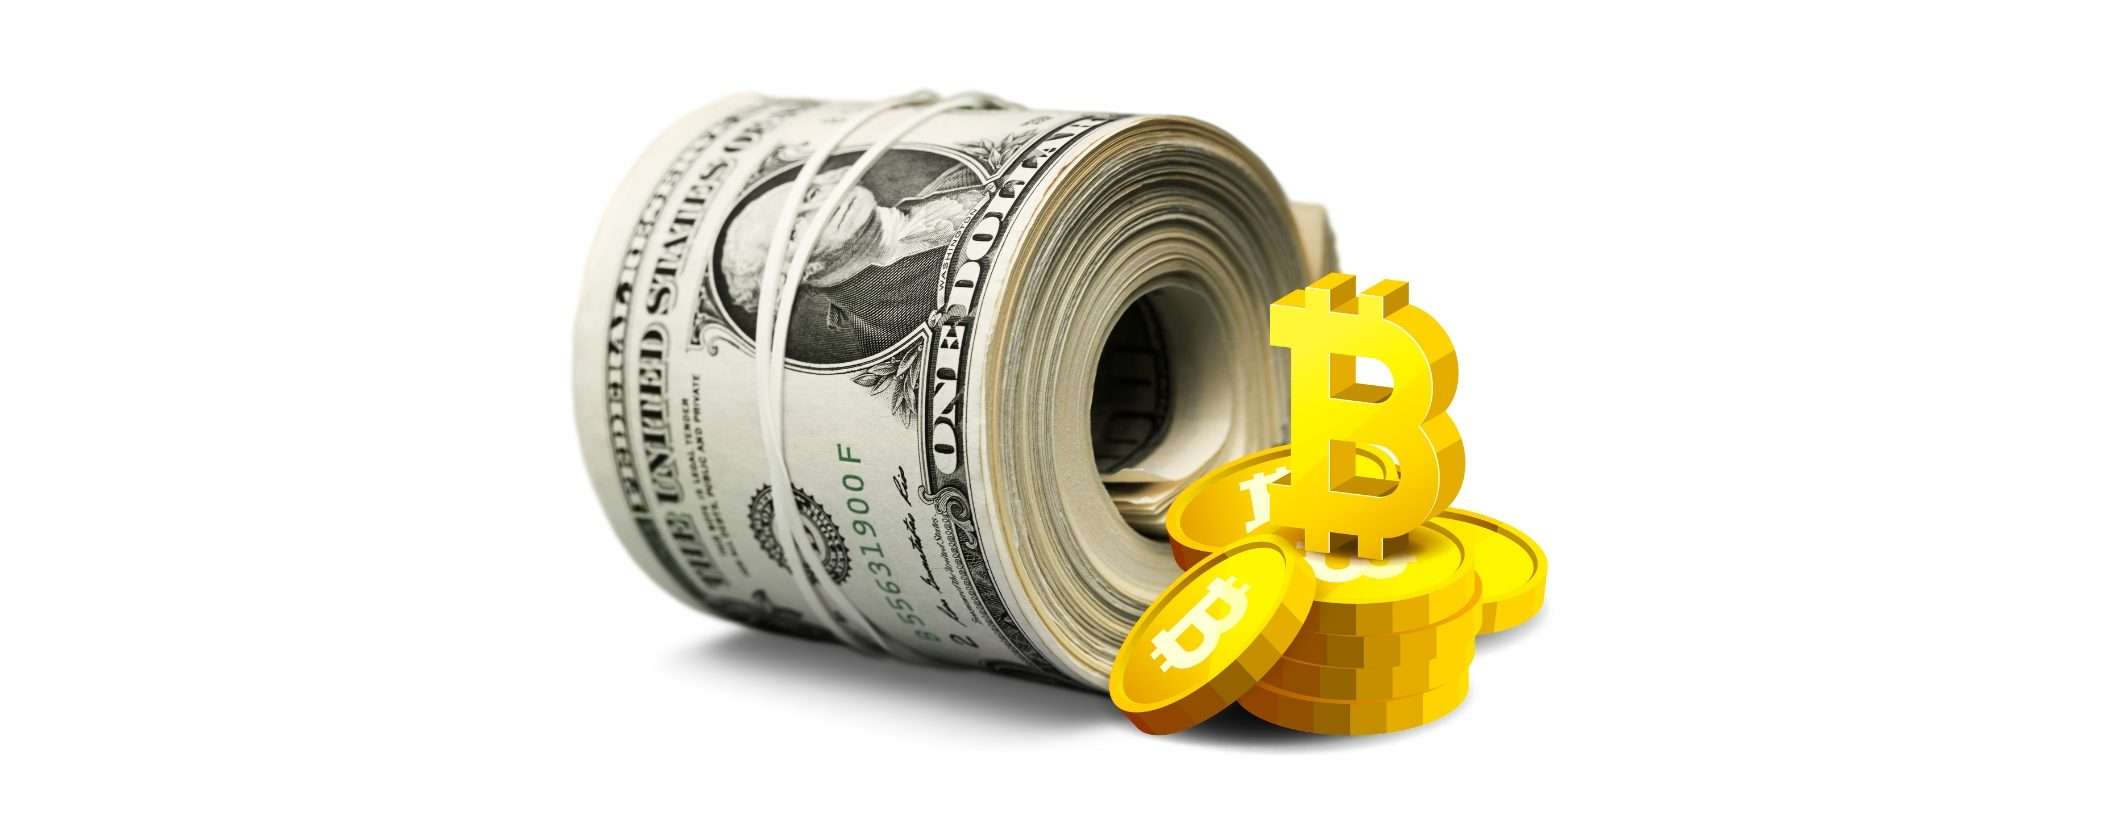 Bitcoin raggiungerà i 500 mila dollari, ma ci vorrà tempo